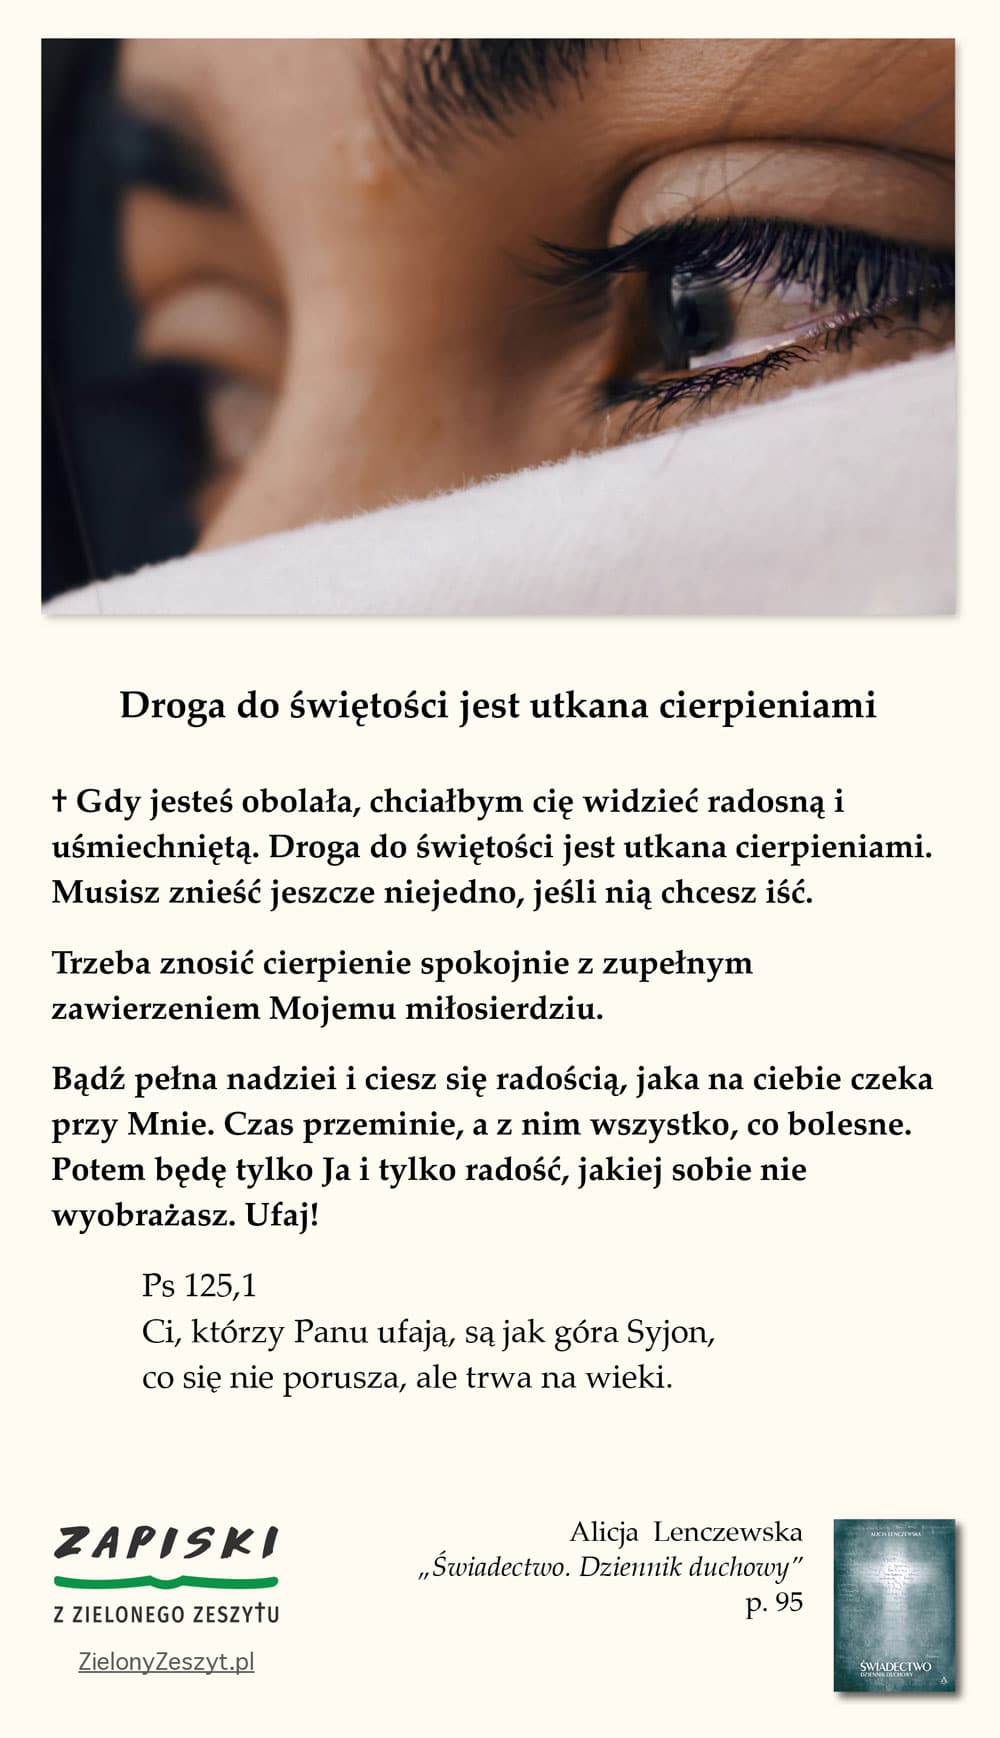 Alicja Lenczewska, „Świadectwo. Dziennik duchowy”, p. 95 (Droga do świętości jest utkana cierpieniami)